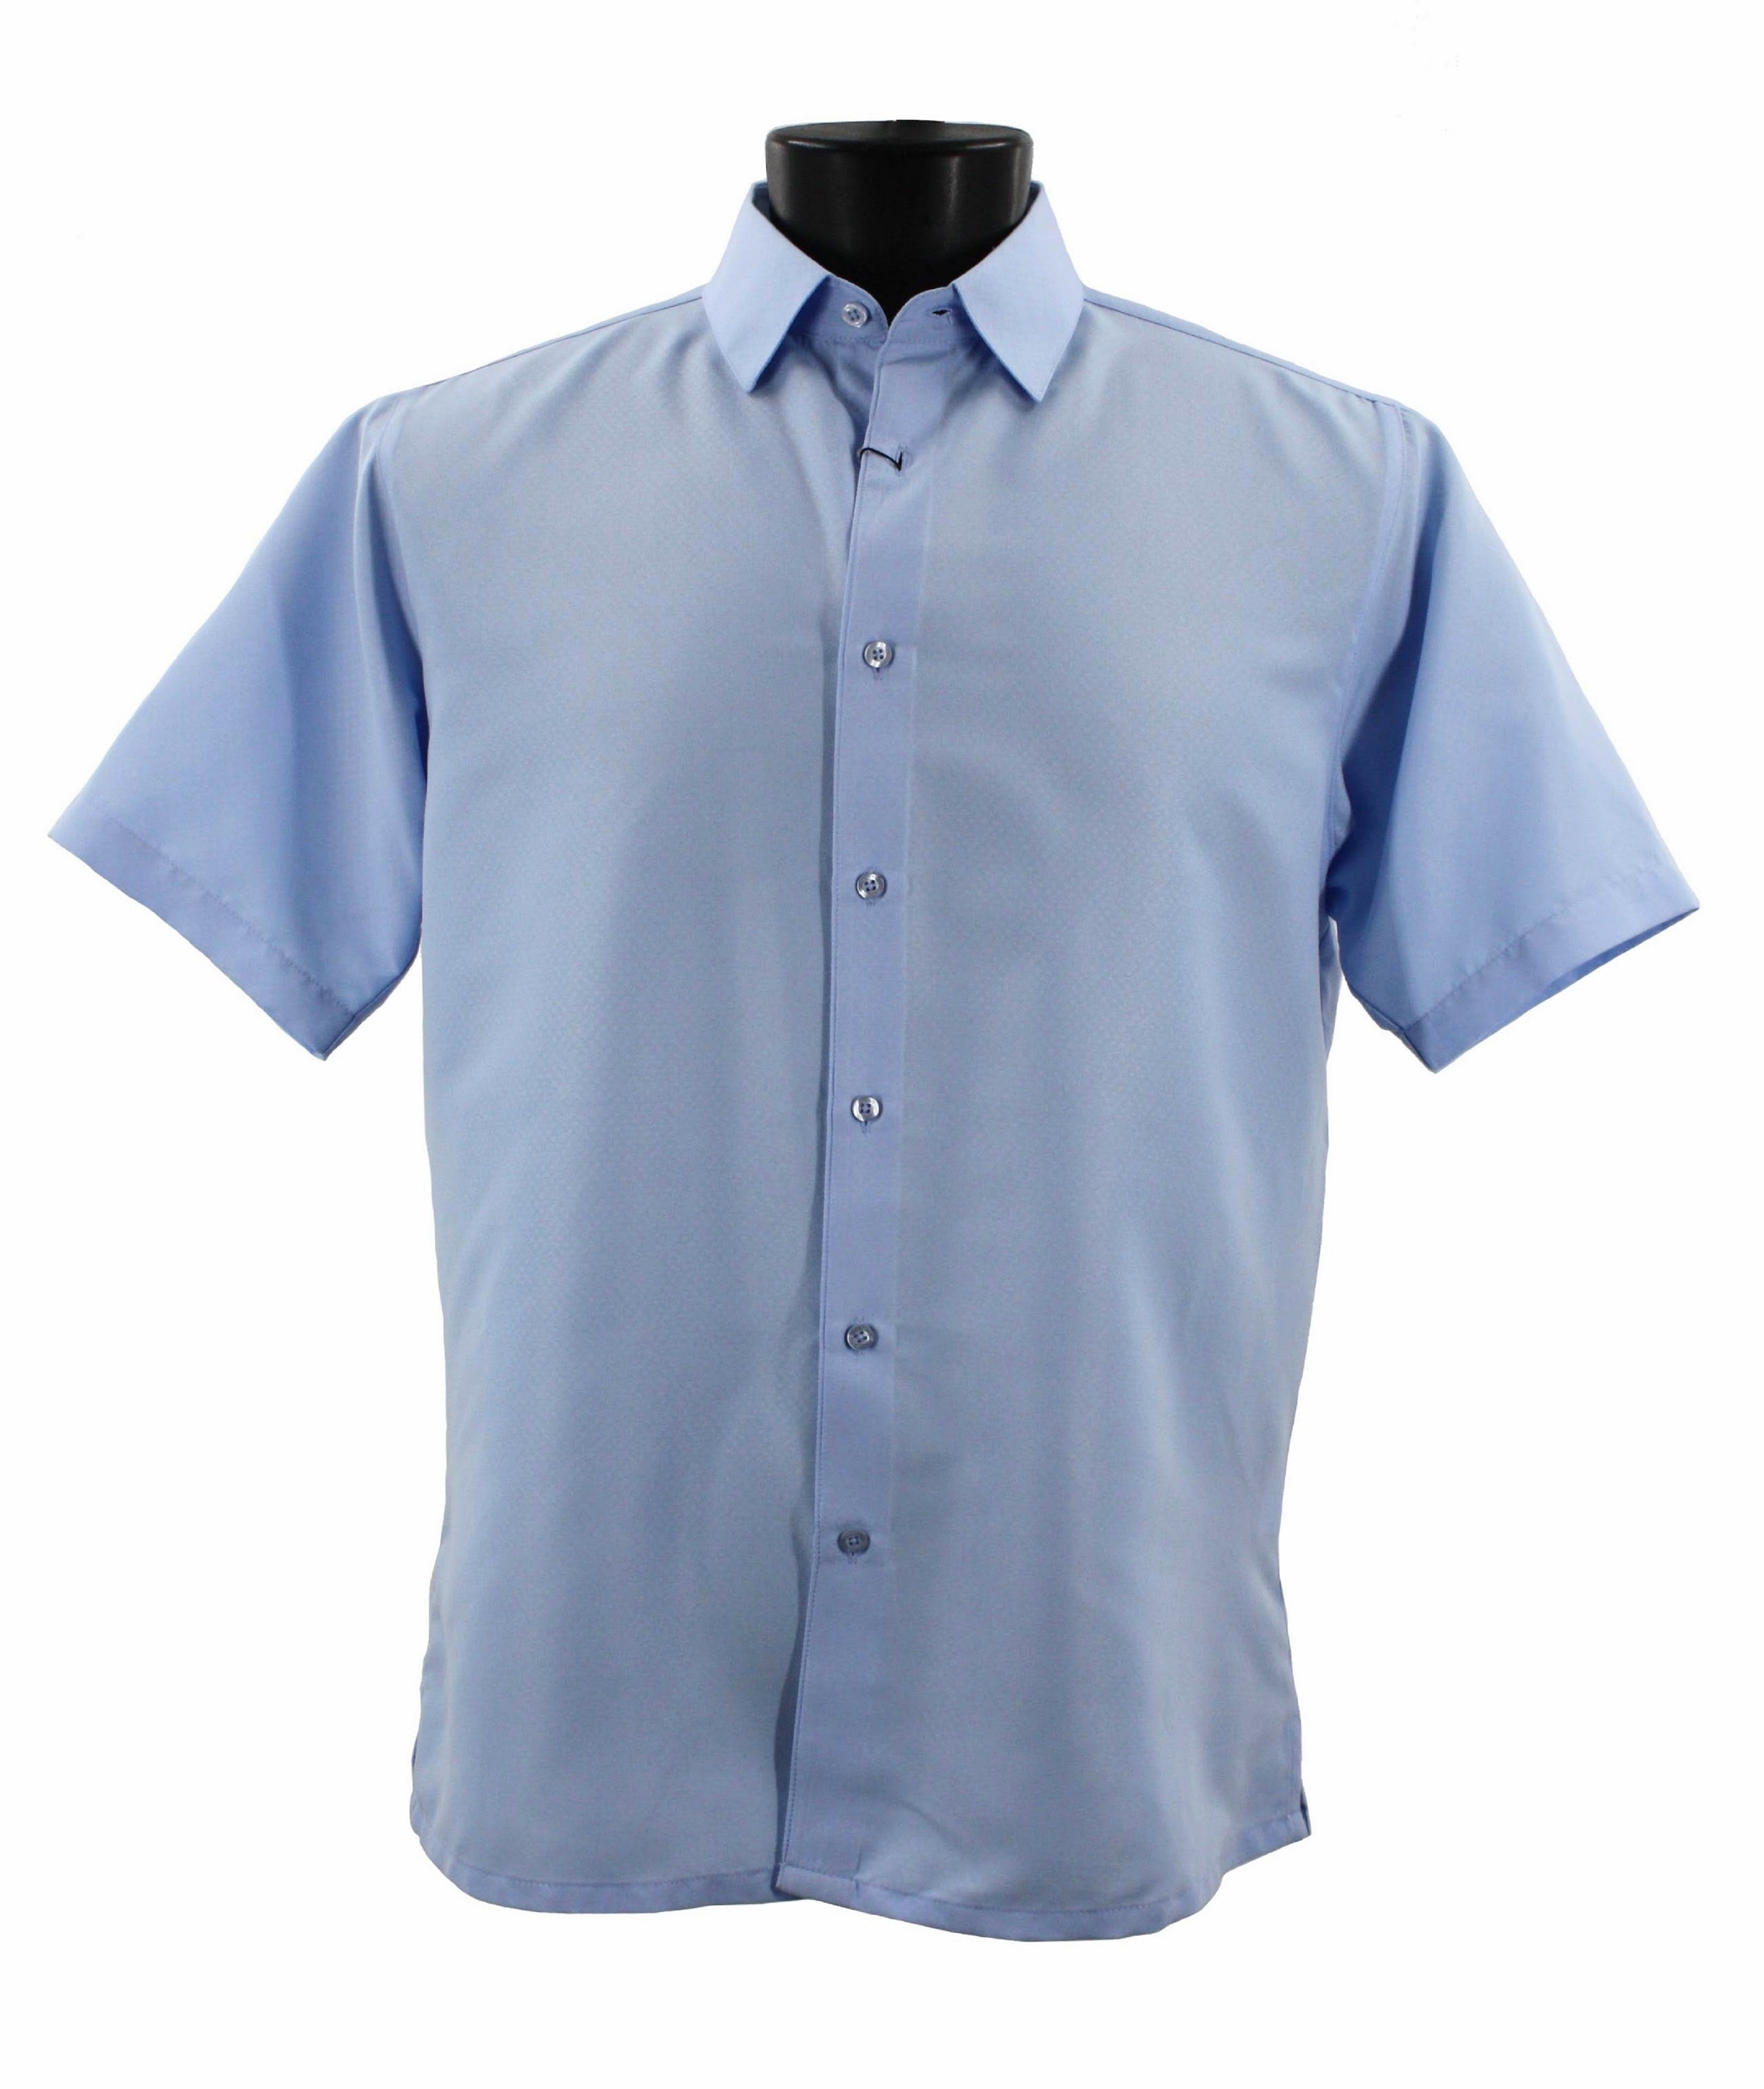 Sangi Short Sleeve Shirt S 2026 Blue